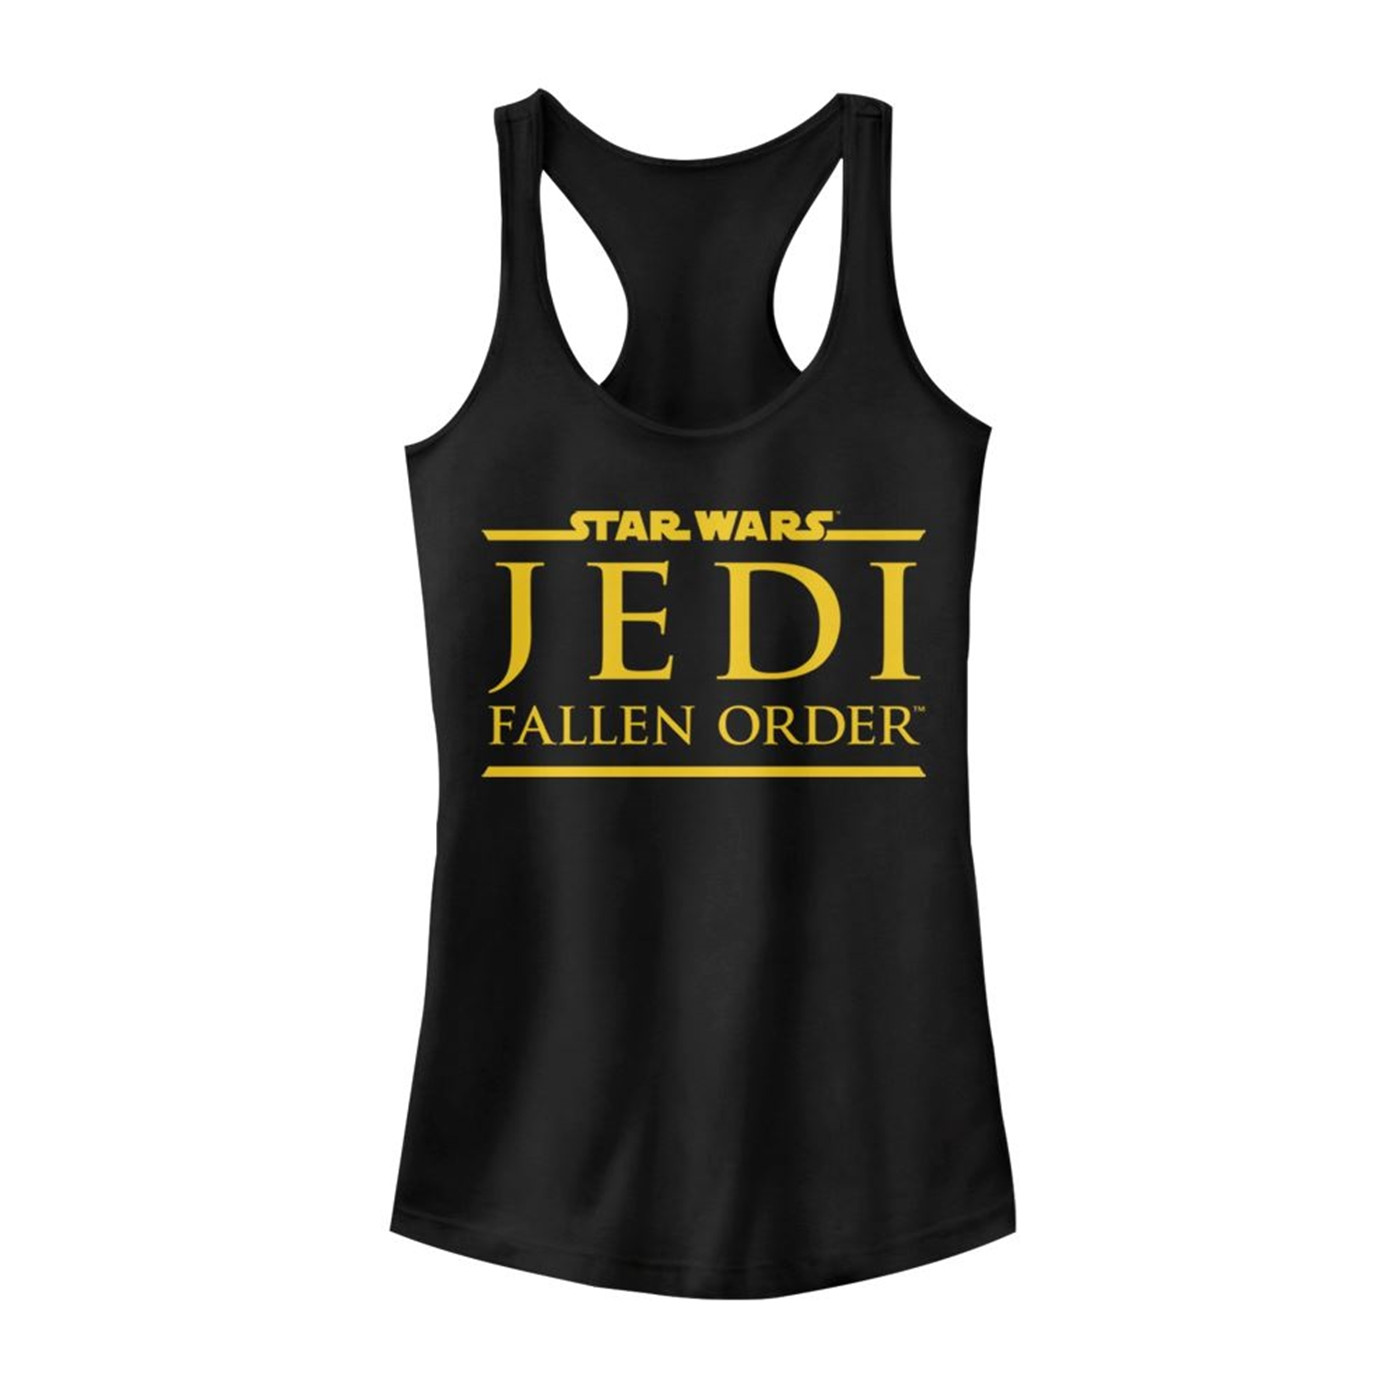 Star Wars Jedi Fallen Order Women's Tank Top